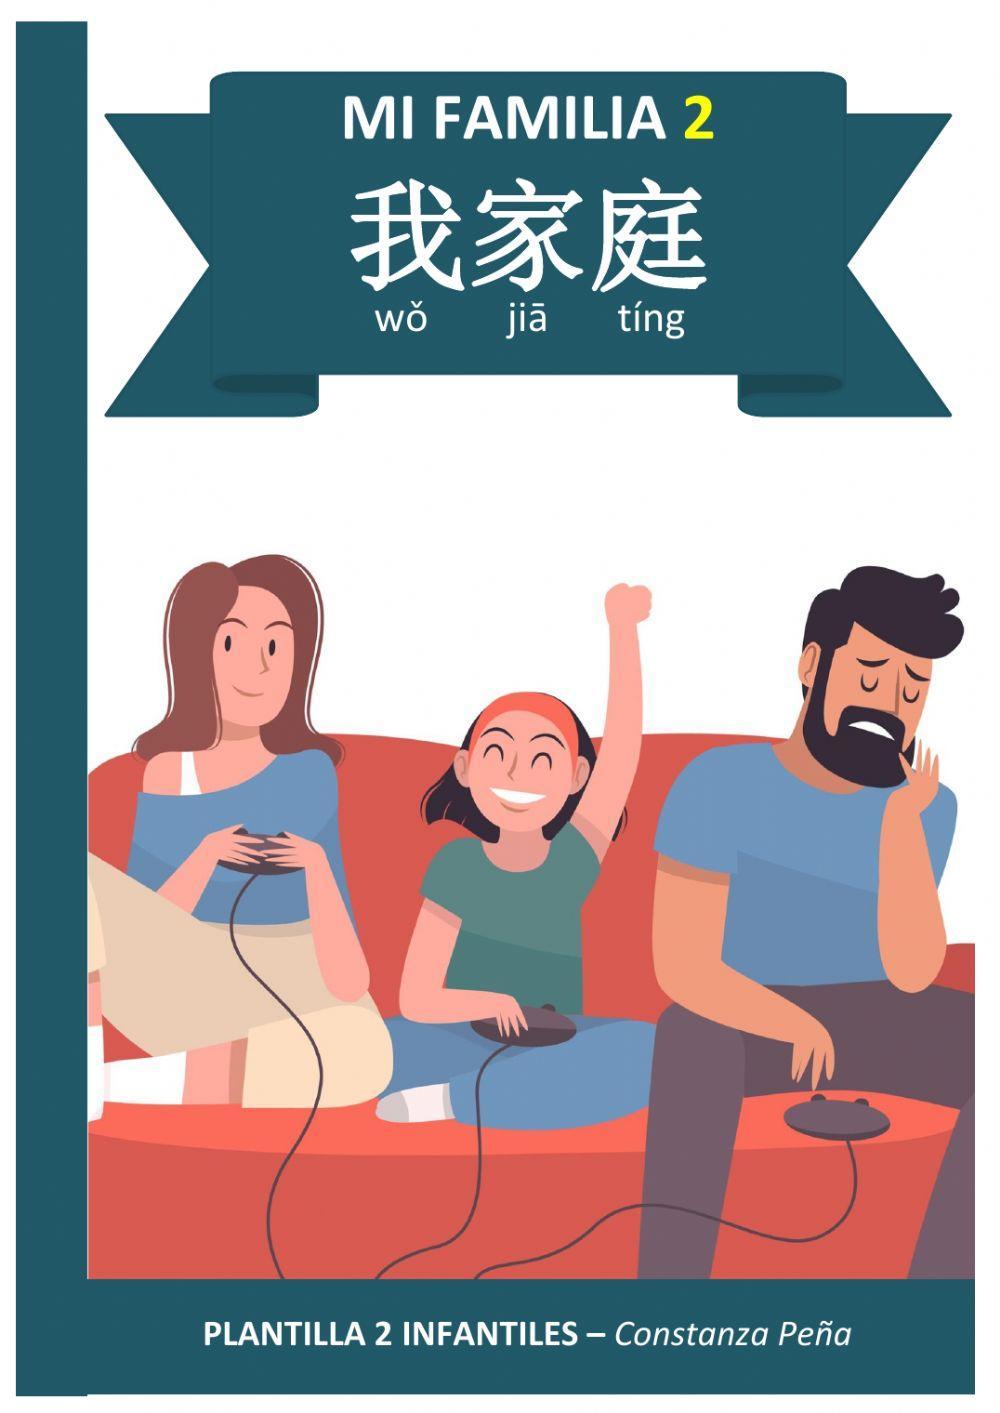 Vocabulario de familia nuclear en chino mandarín